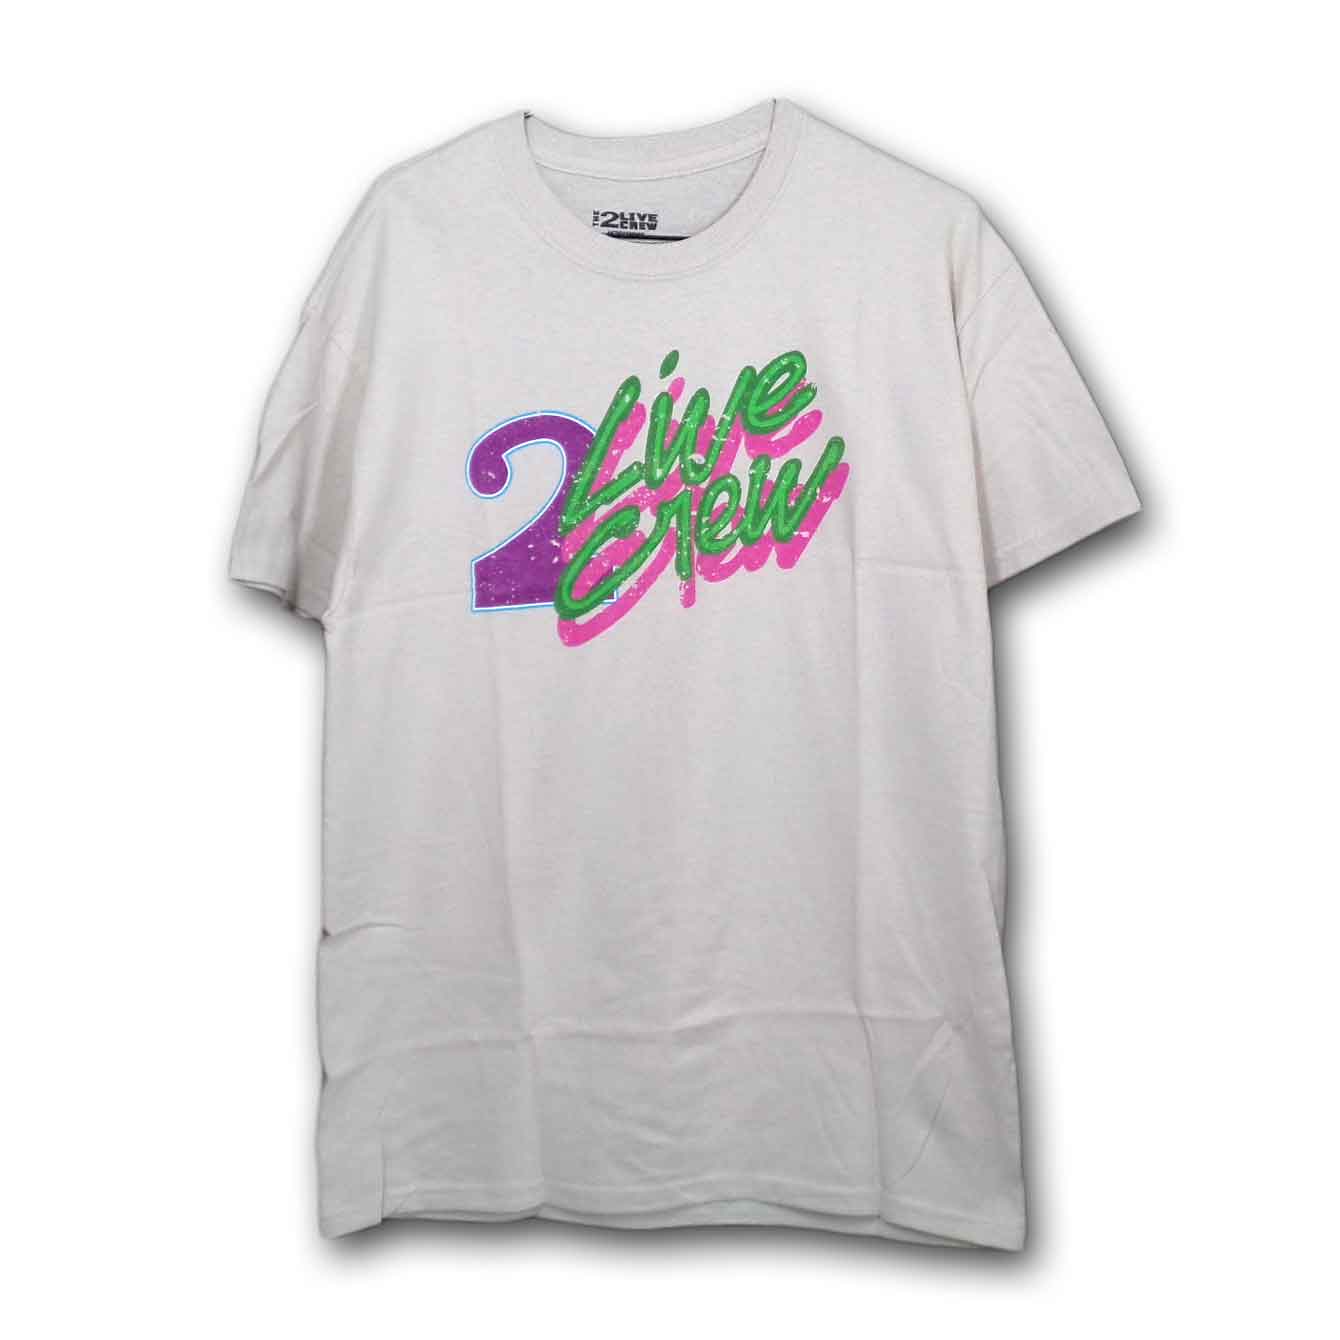 2 Live Crew ツーライブクルー Tシャツ 80年代ヴィンテージ